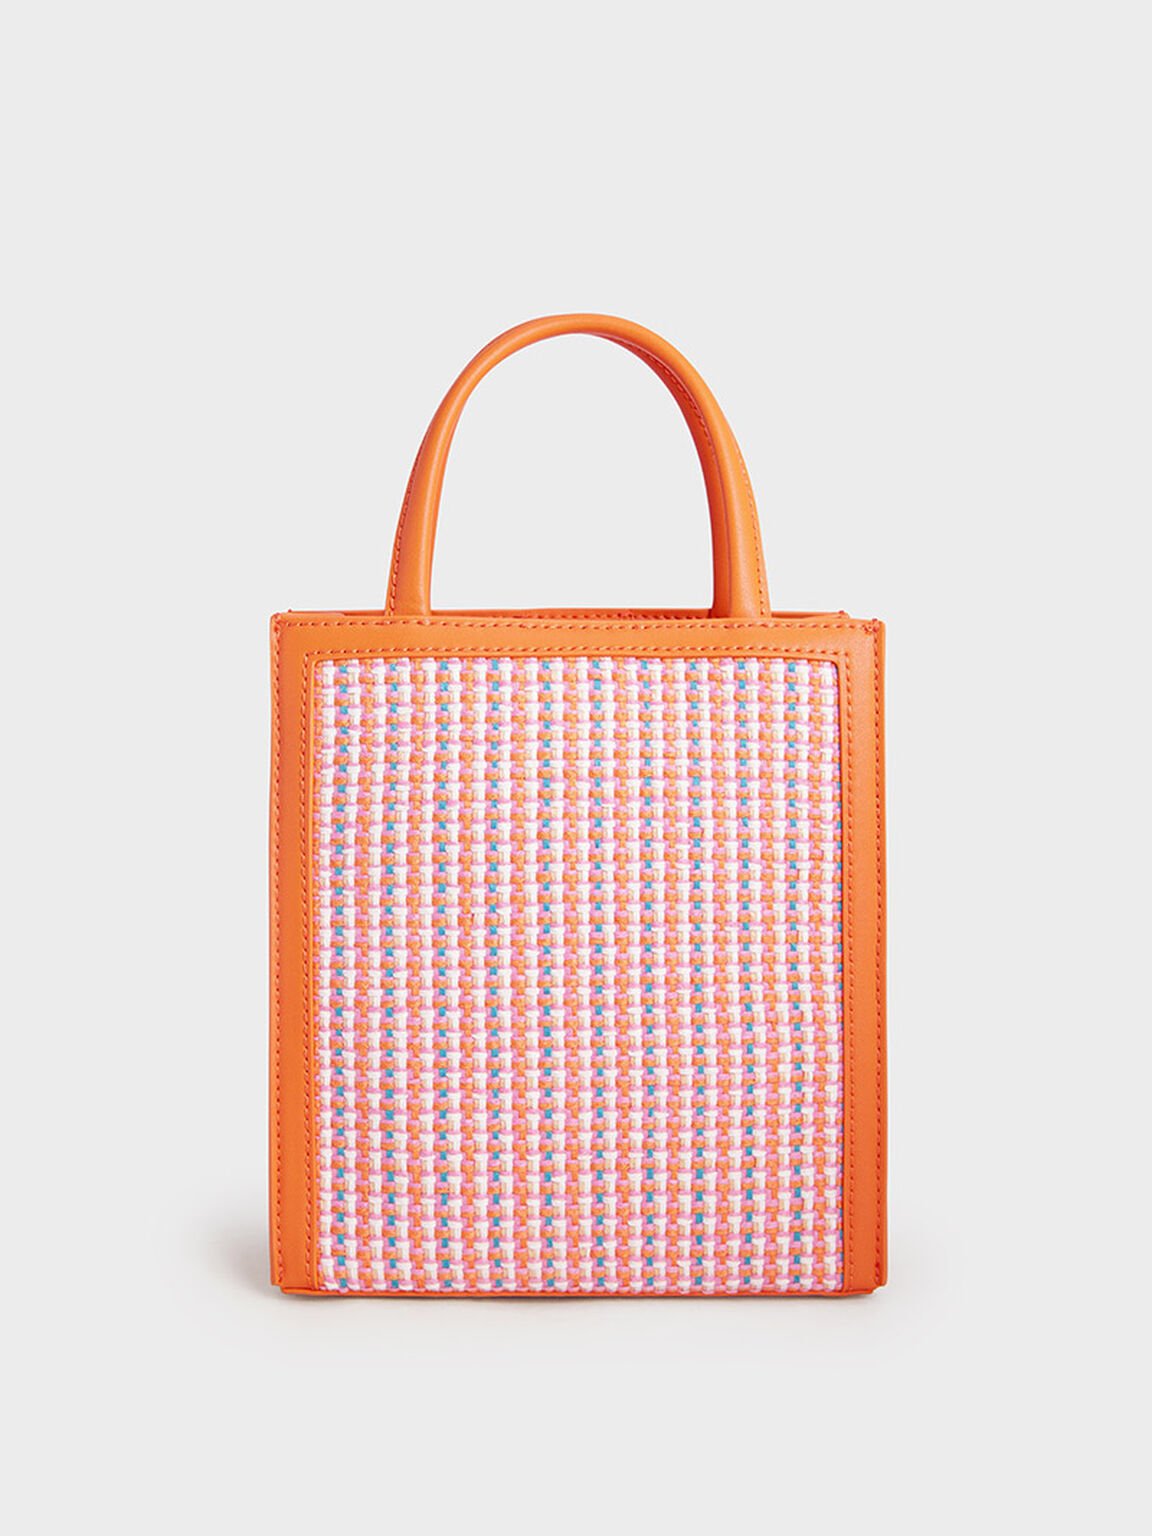 Tweed Double Handle Tote Bag, Orange, hi-res